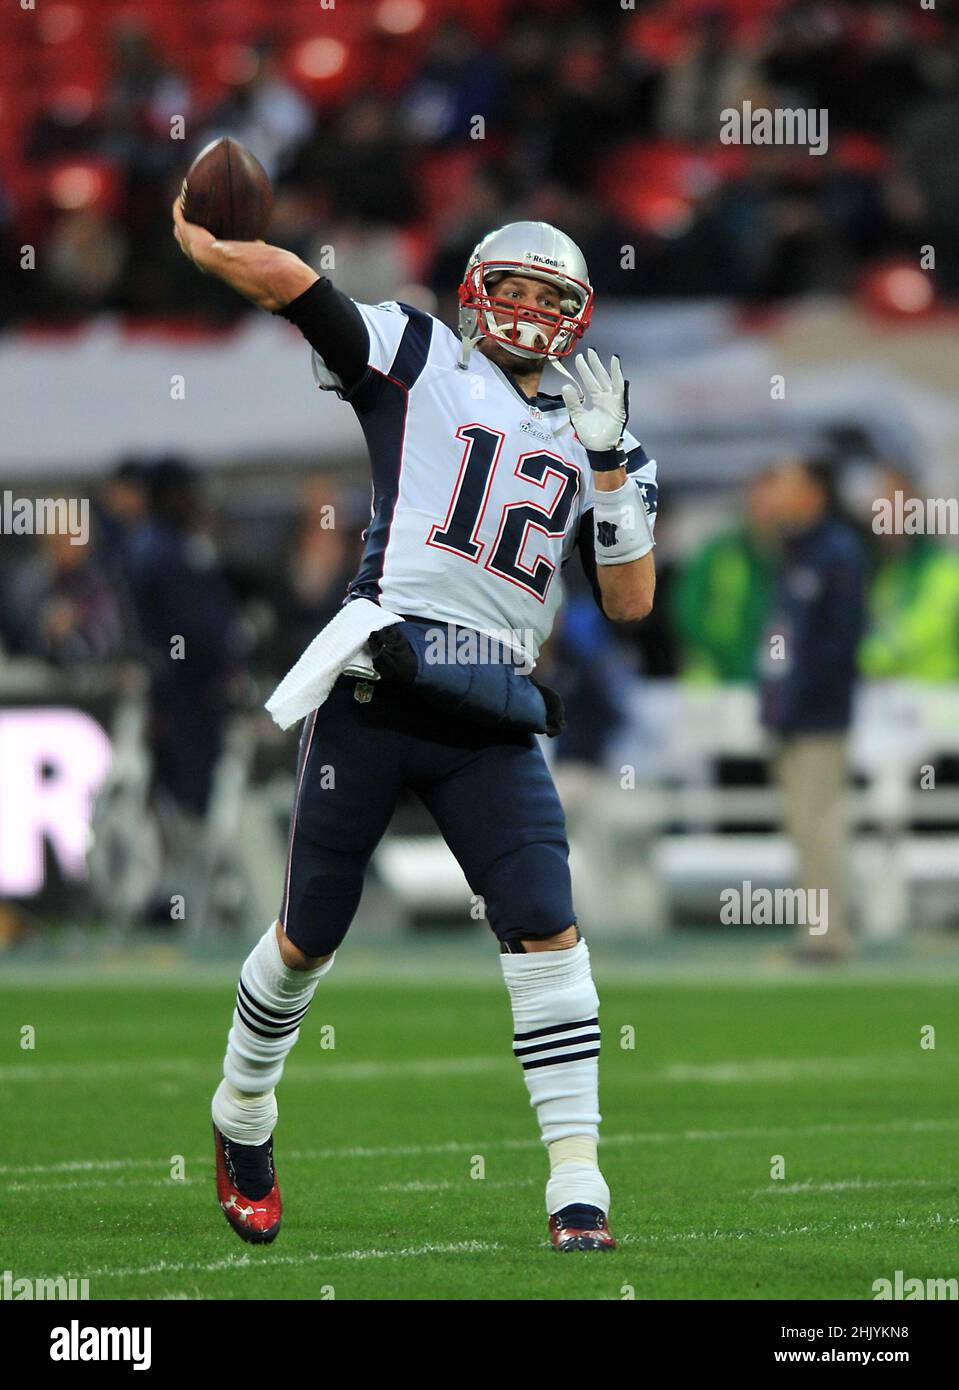 Foto del archivo fechada el 28-10-2012 del siete veces ganador del Super Bowl Tom Brady, que se ha retirado de la NFL de 44 años, ha anunciado en Instagram. Fecha de emisión: Martes, 1 de febrero de 2022. Foto de stock